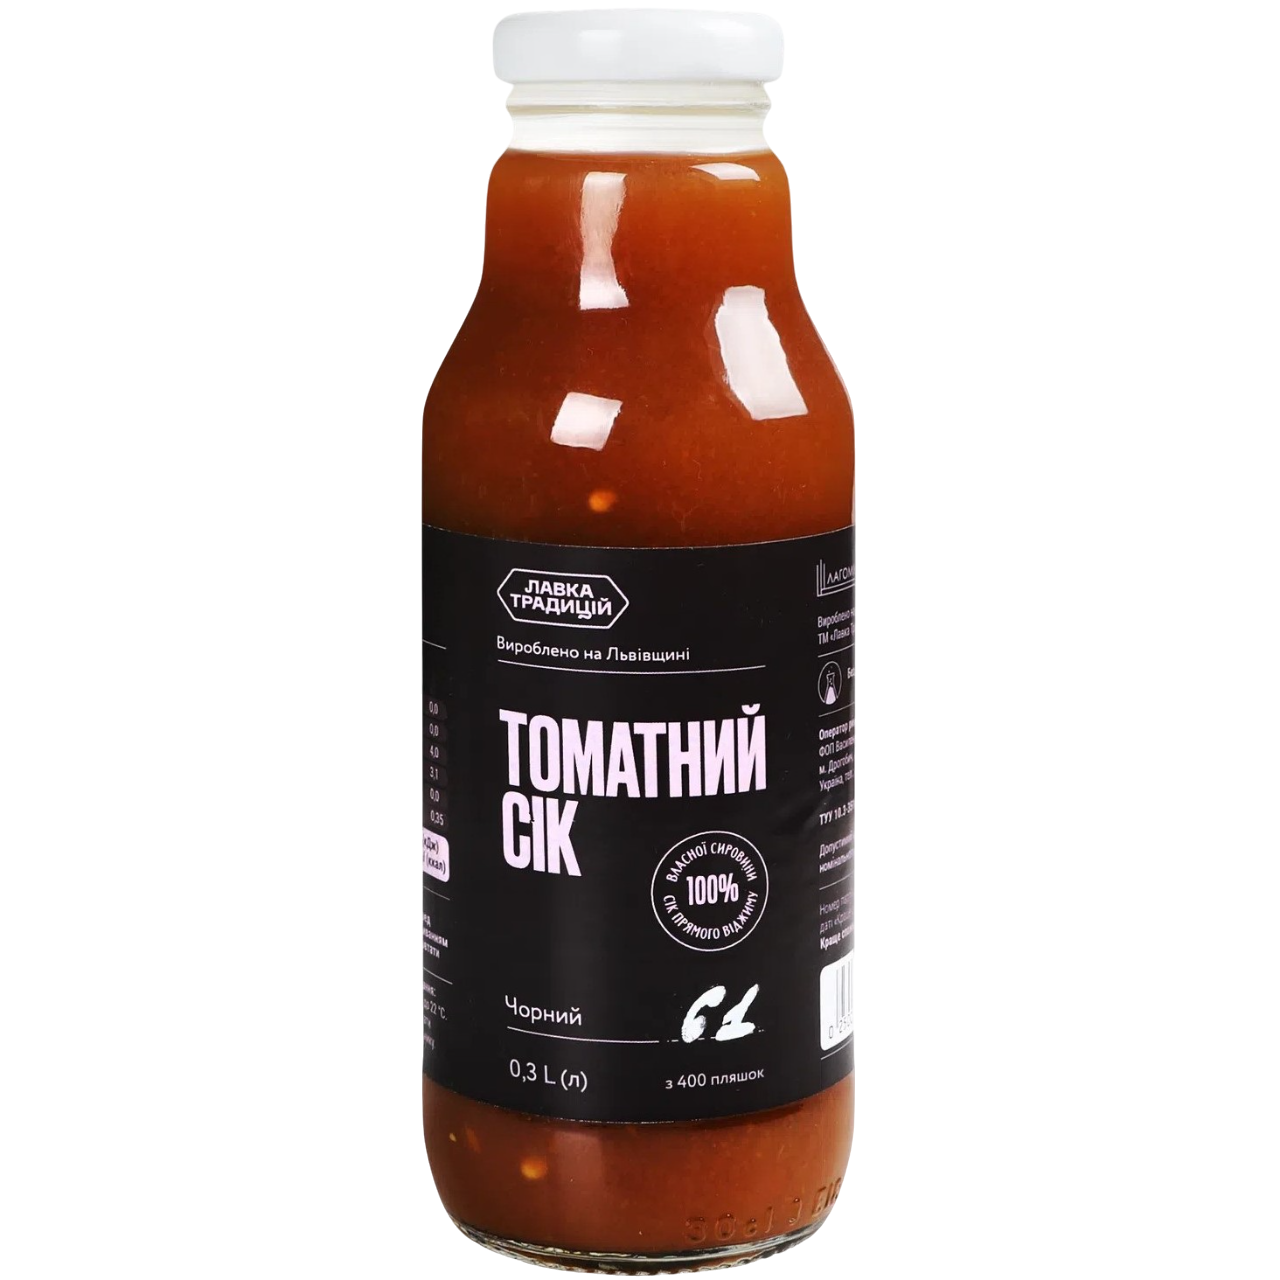 Сок Лавка традицій томатный черный 0.3 л - фото 1